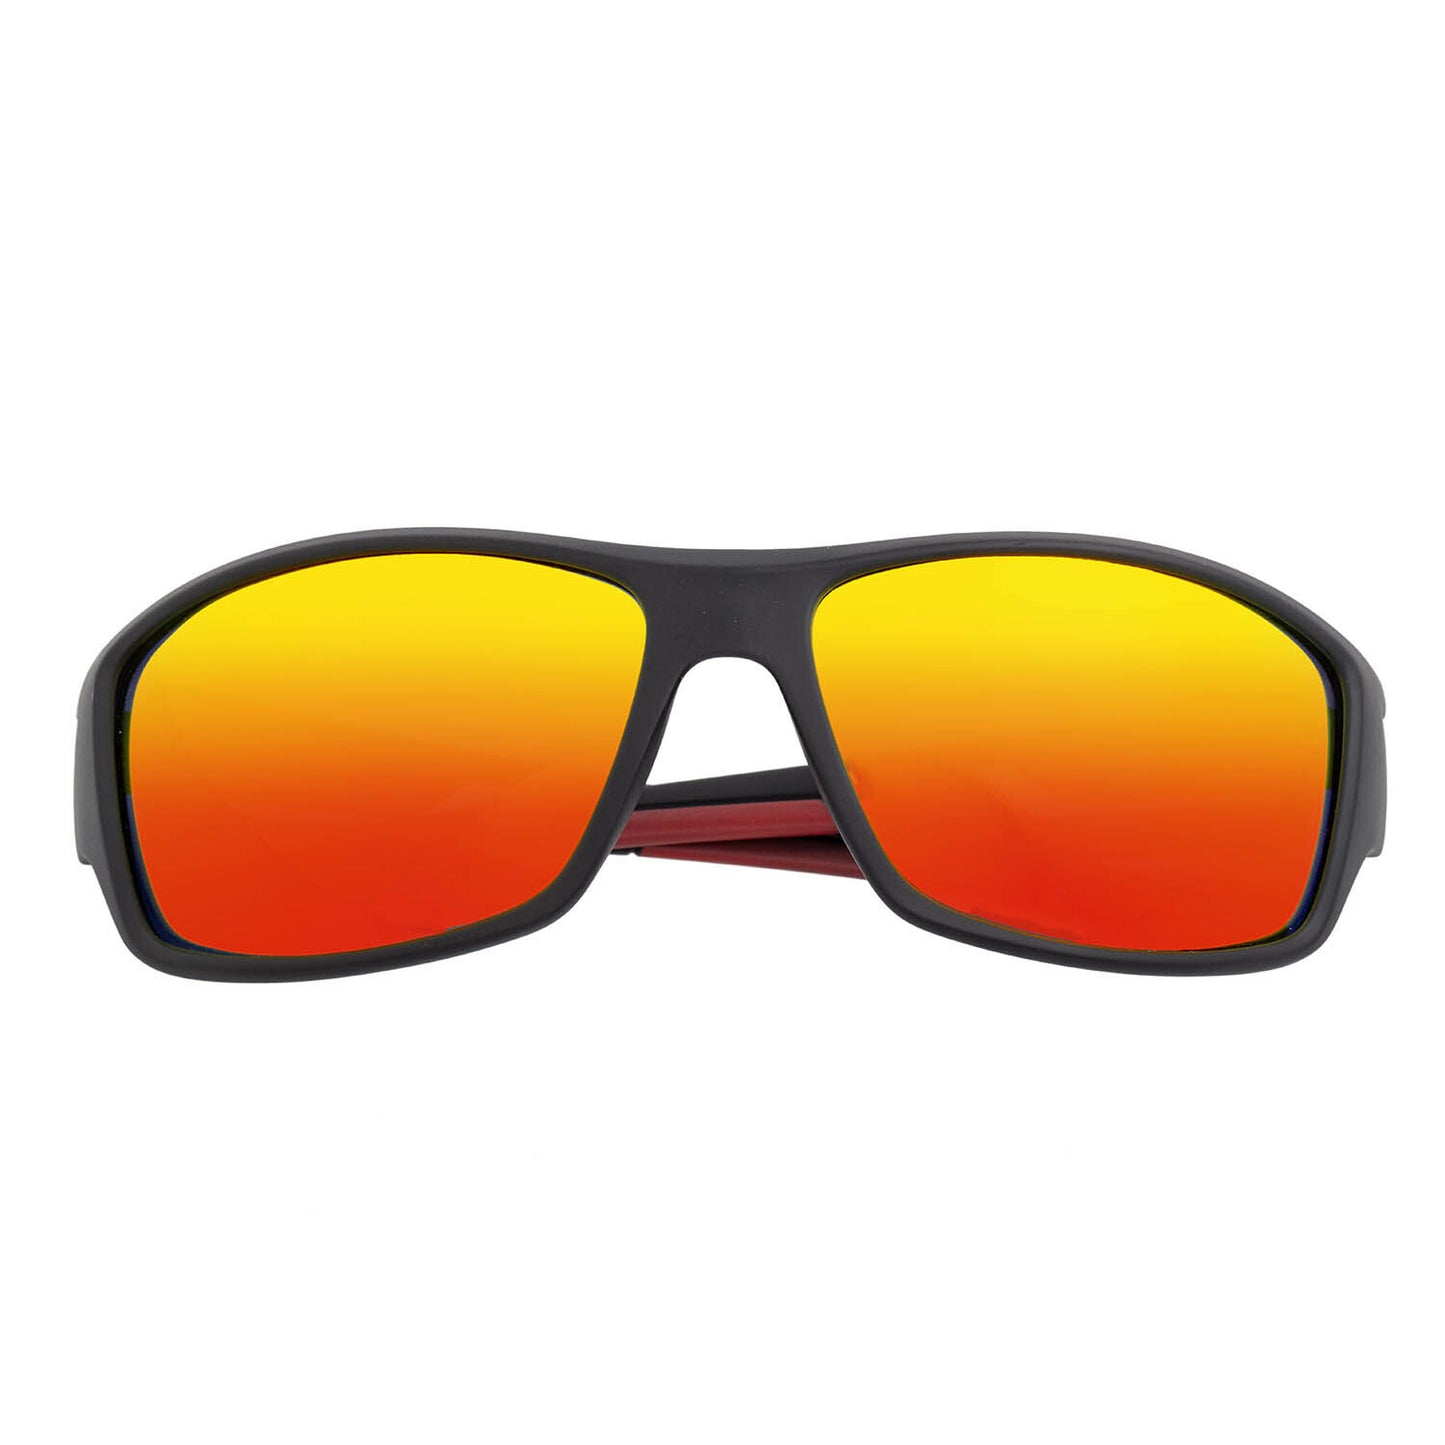 Aquarius Polarized Sunglasses - Black + Red-Yellow